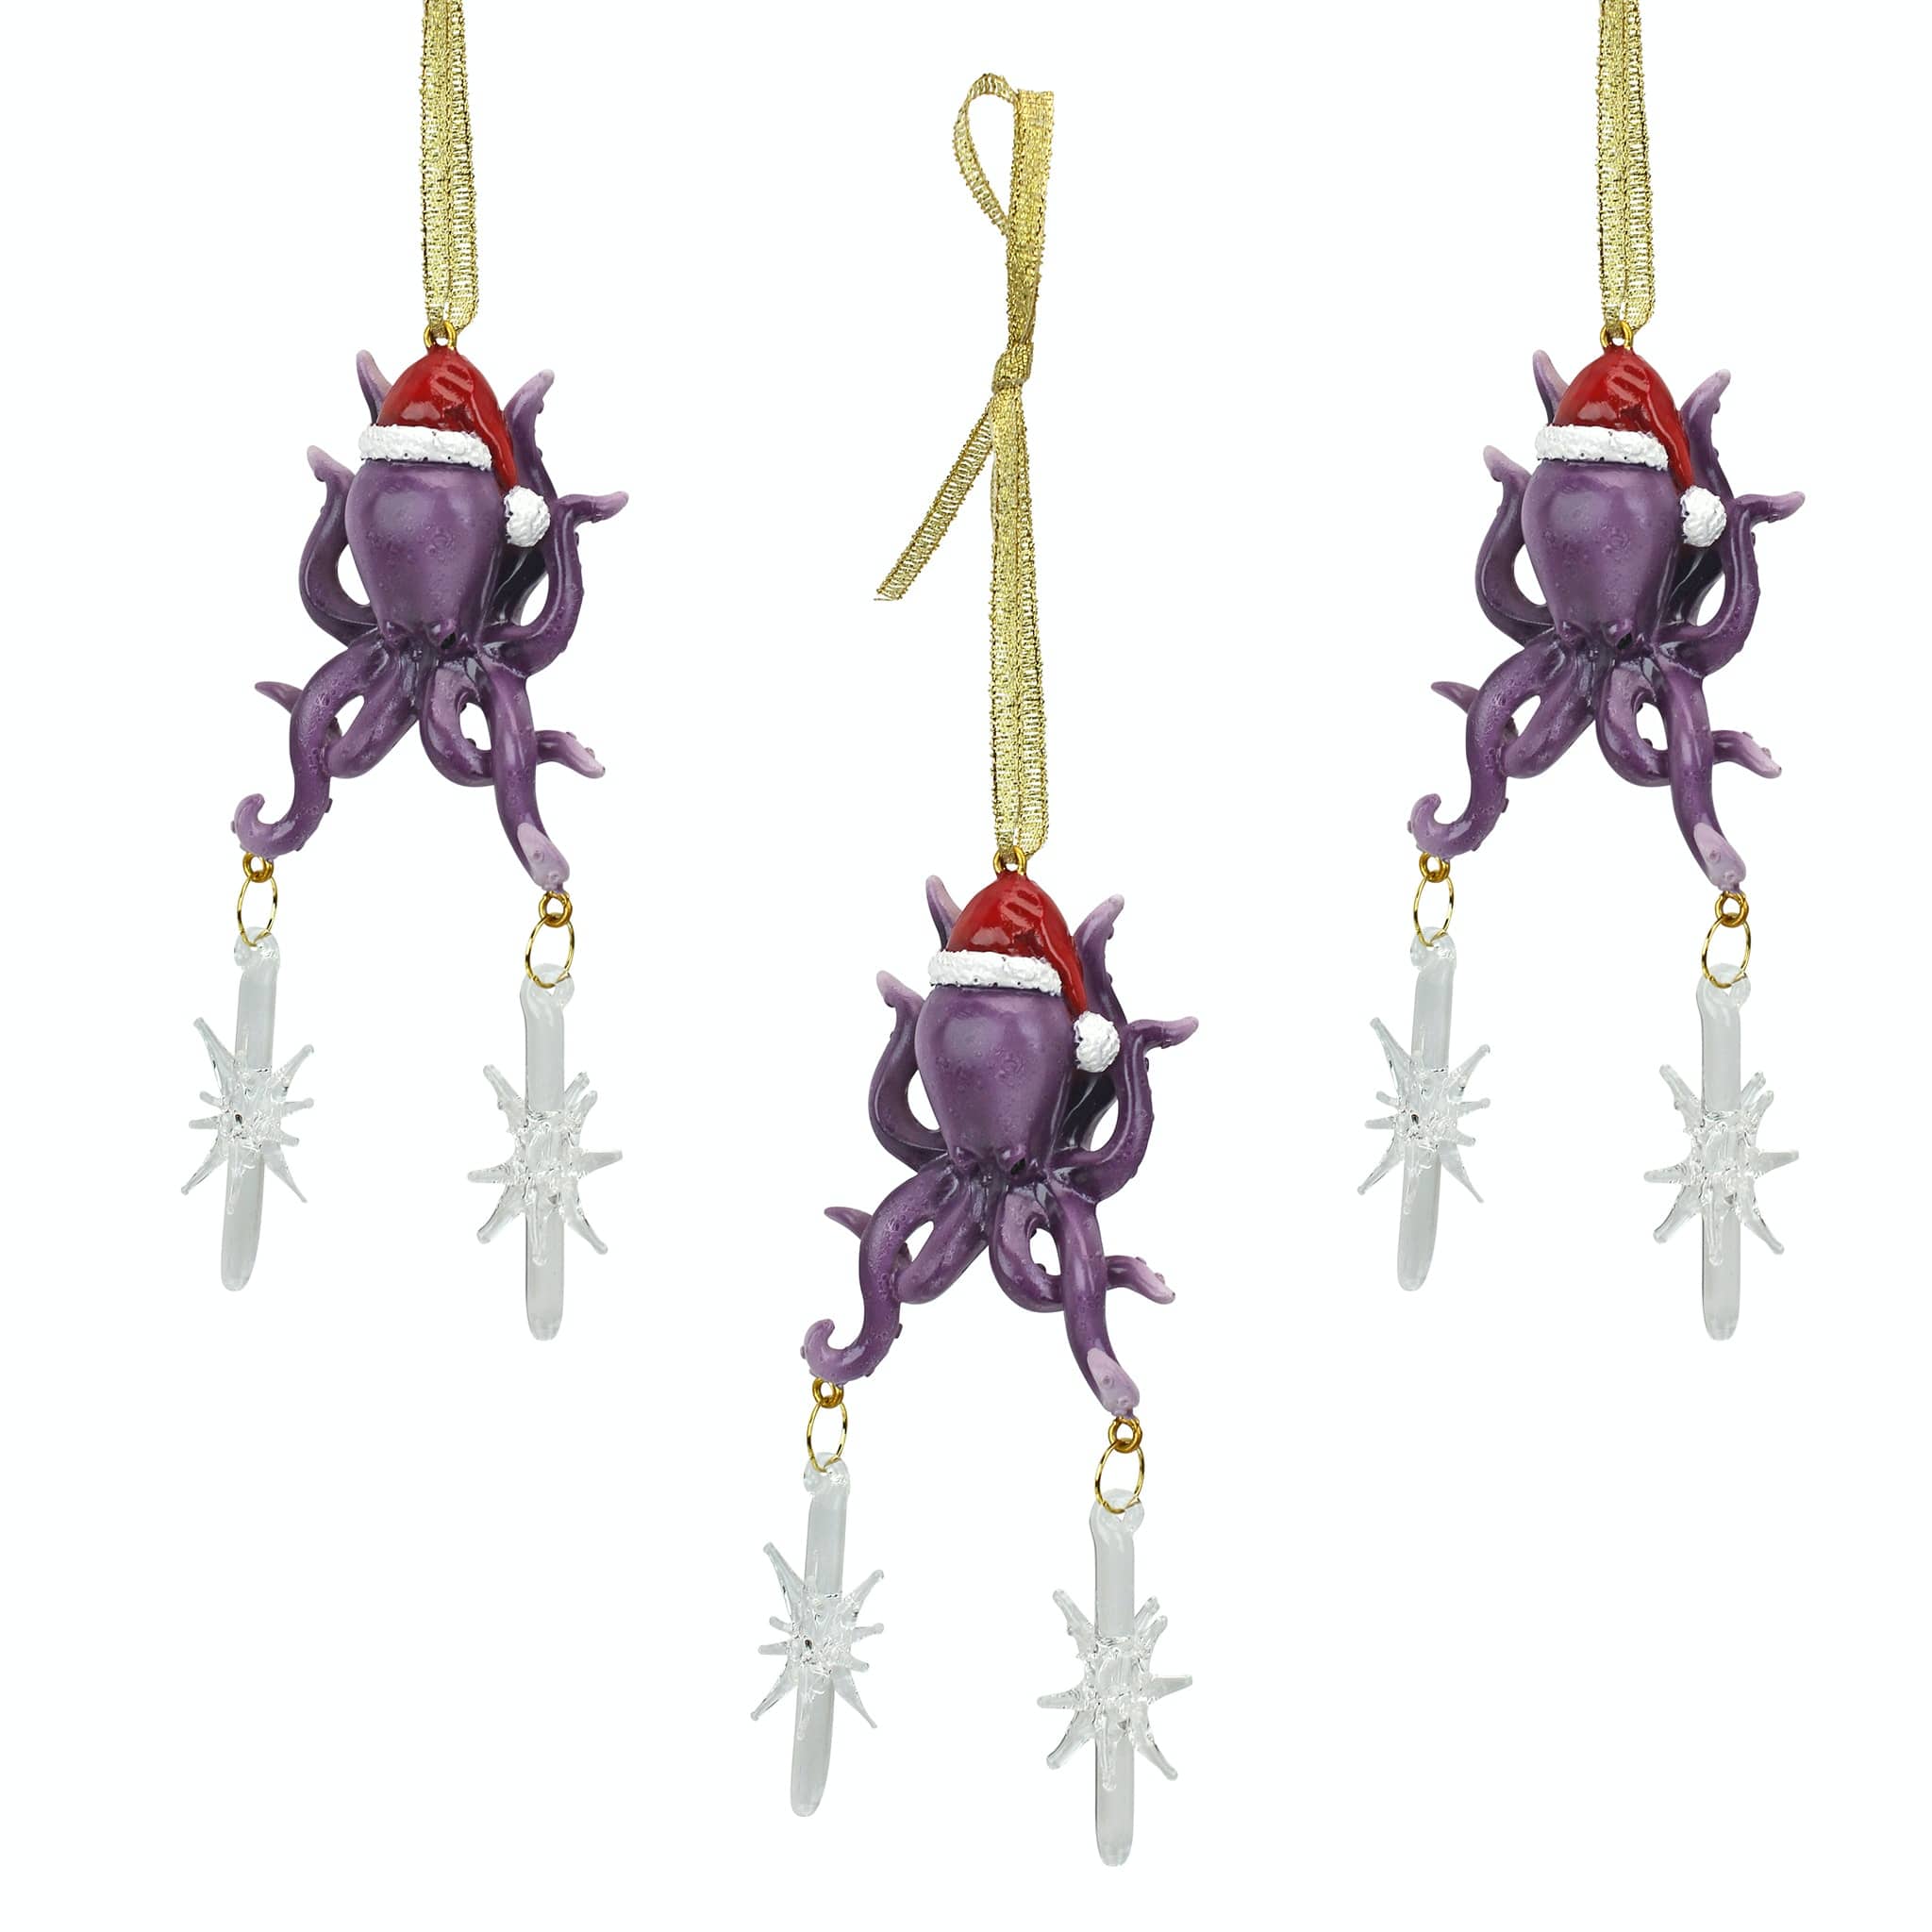 Design Toscano 3ct. Tenacious Tentacles Octopus Ornaments